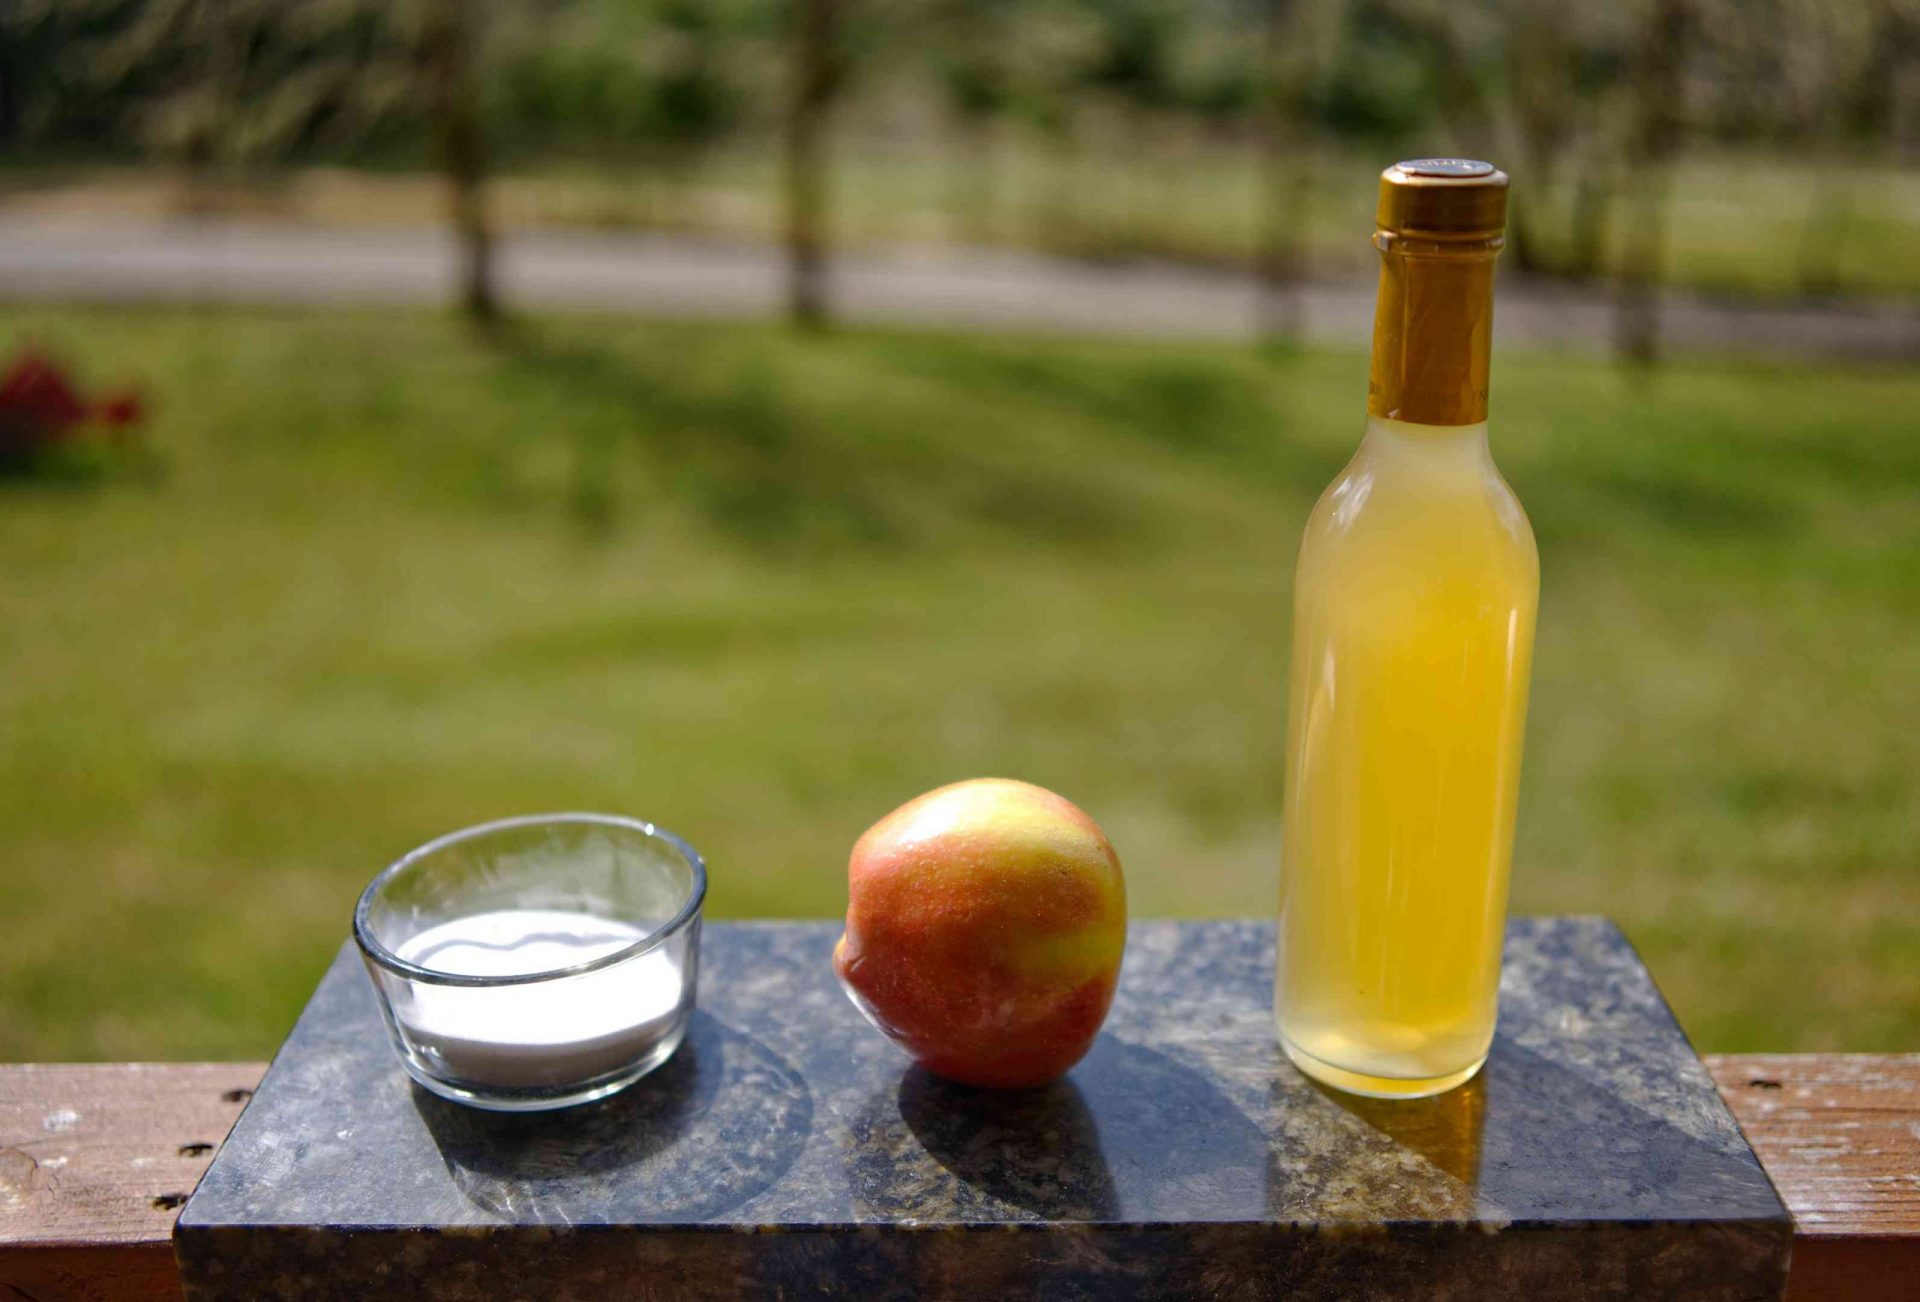 Bicarbonato de sodio en un tarro de cristal y vinagre de sidra de manzana expuestos en una tabla de cortar de mármol